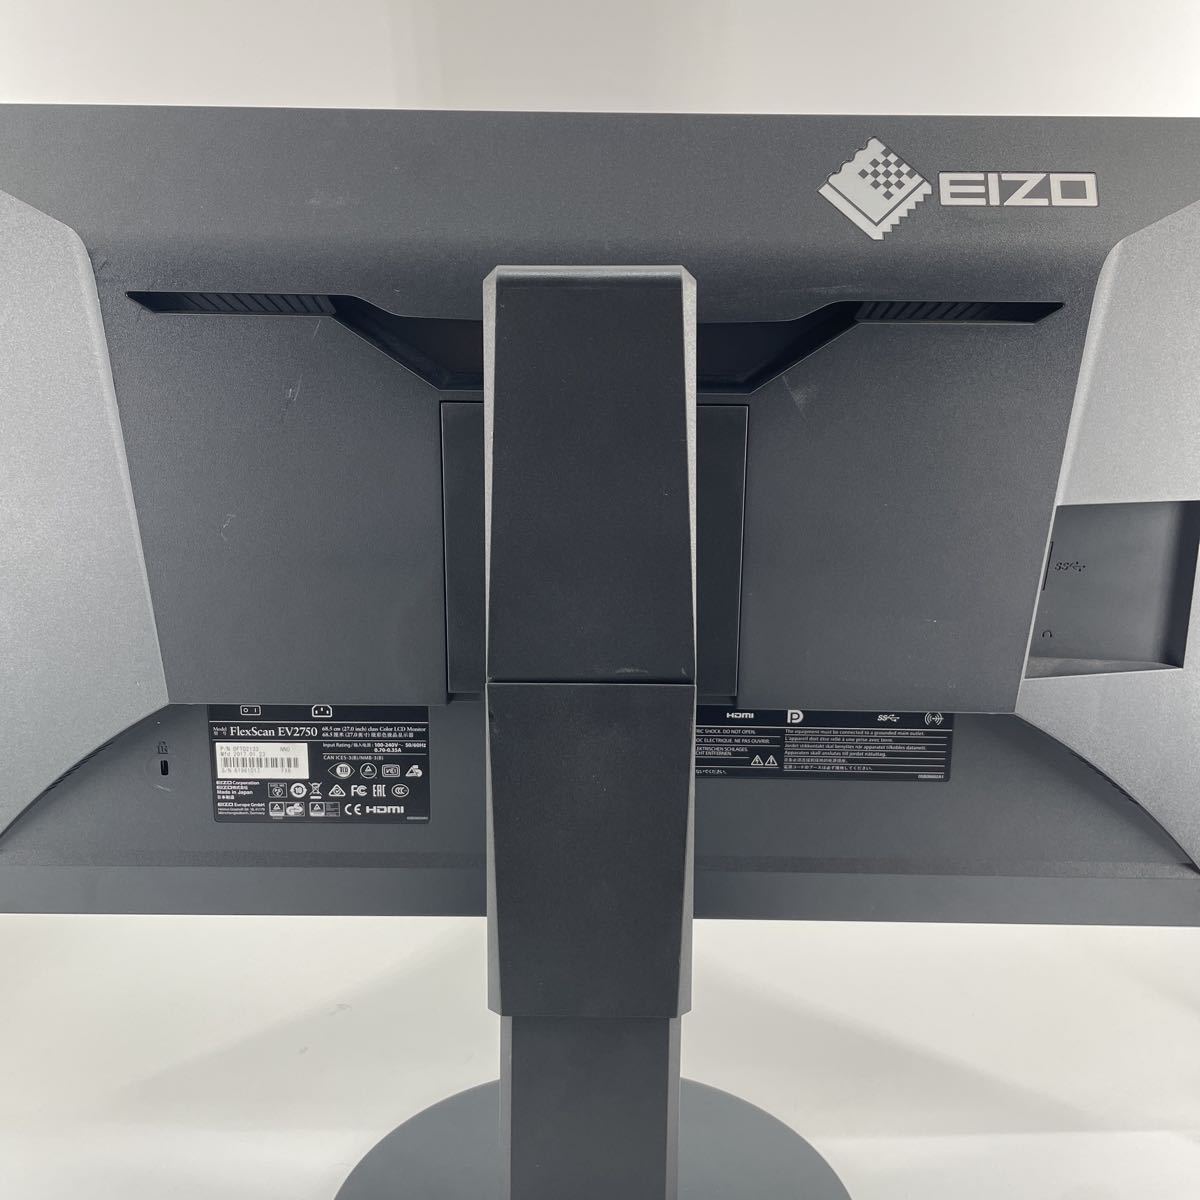 〇【良品】EIZO FlexScan EV2750 27インチ ワイド液晶モニター WQHD